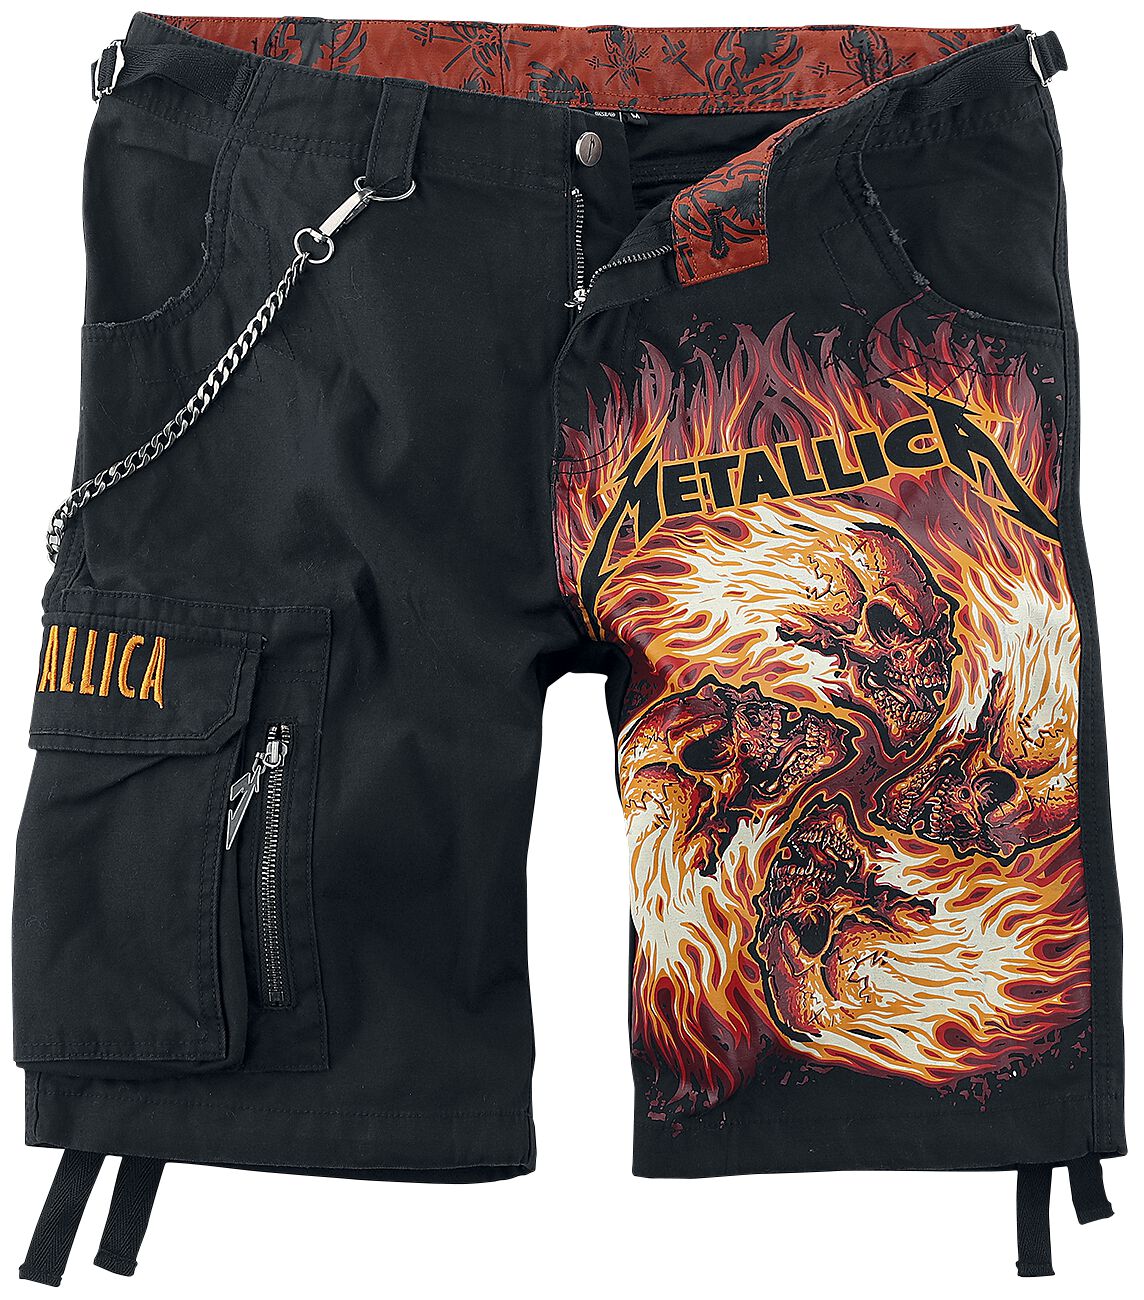 Metallica Short - EMP Signature Collection - M bis 4XL - für Männer - Größe 4XL - schwarz  - EMP exklusives Merchandise!